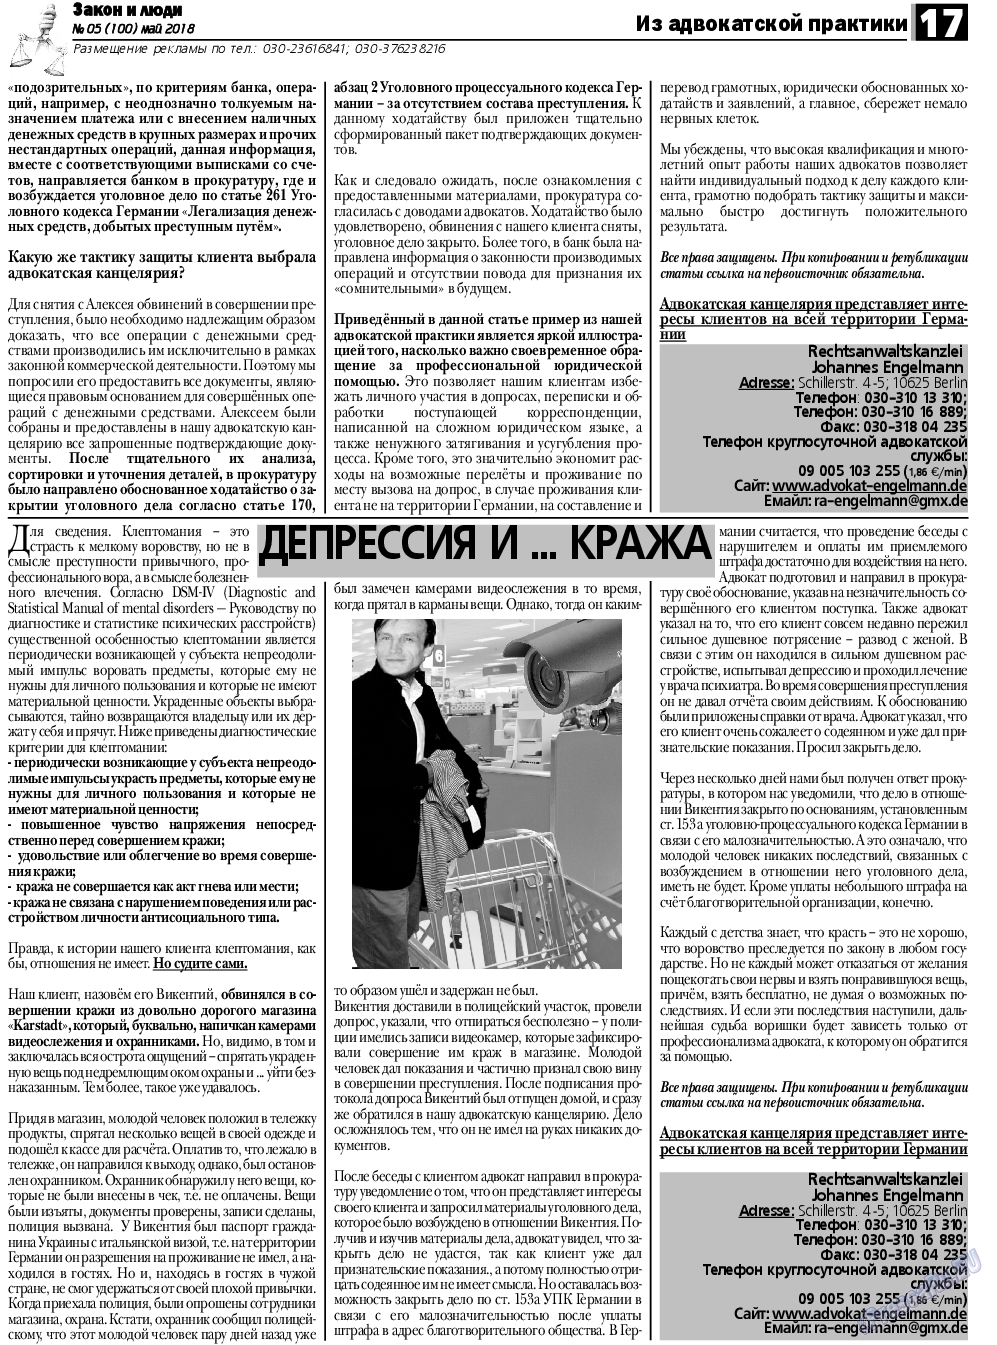 Закон и люди, газета. 2018 №5 стр.17